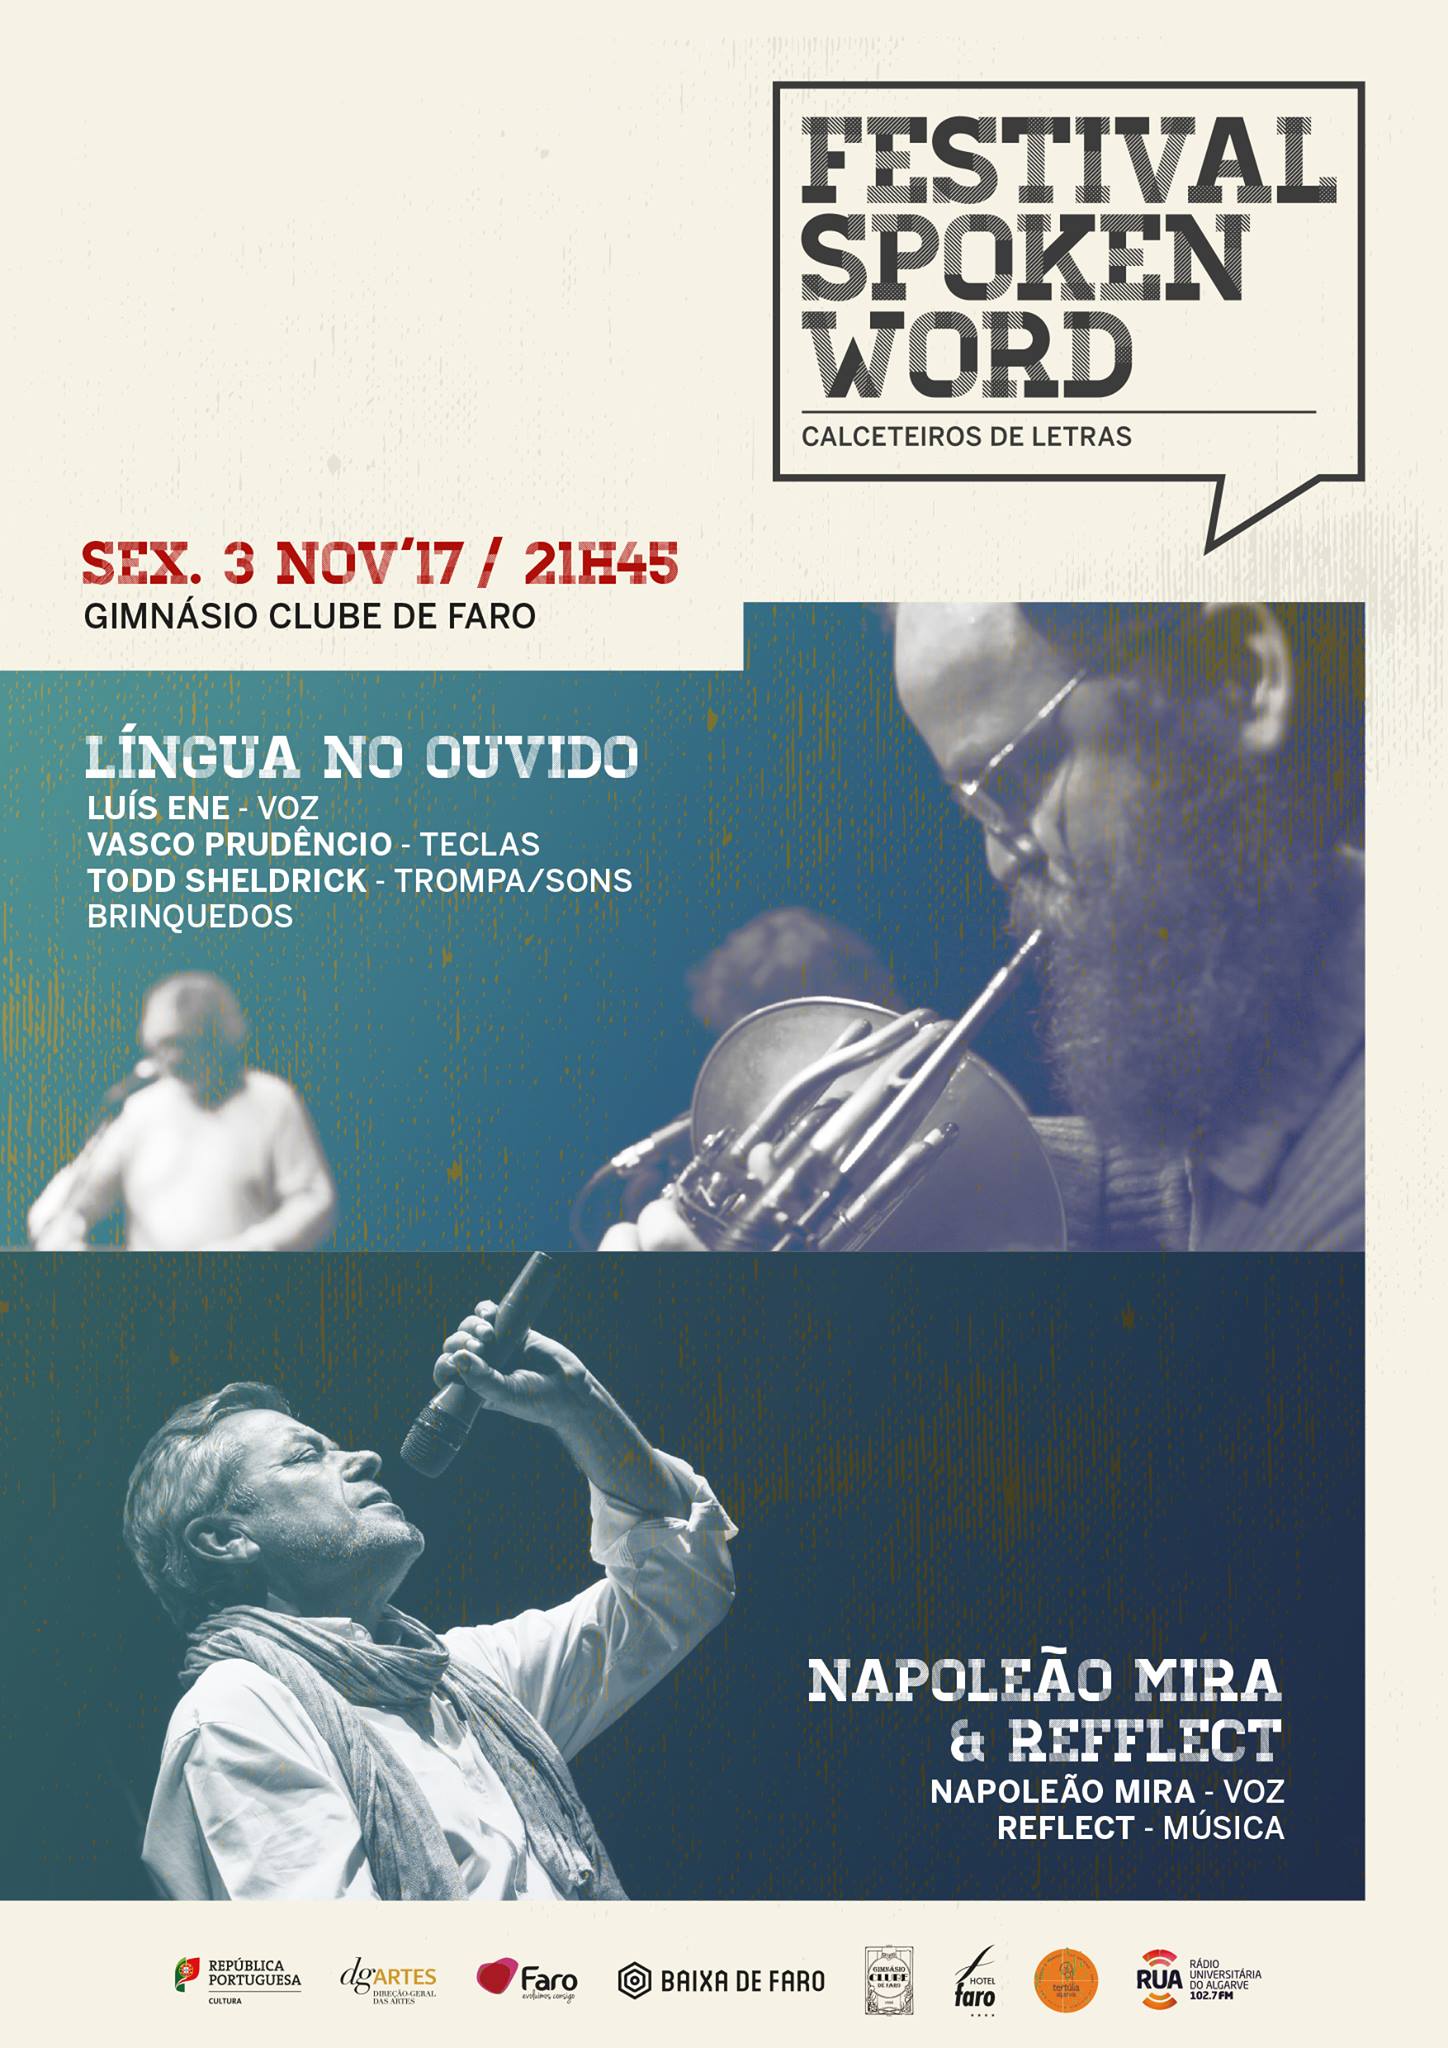  Napoleão Mira & Reflect @ Festival Spoken Word - Calceteiros de Letras (Faro)